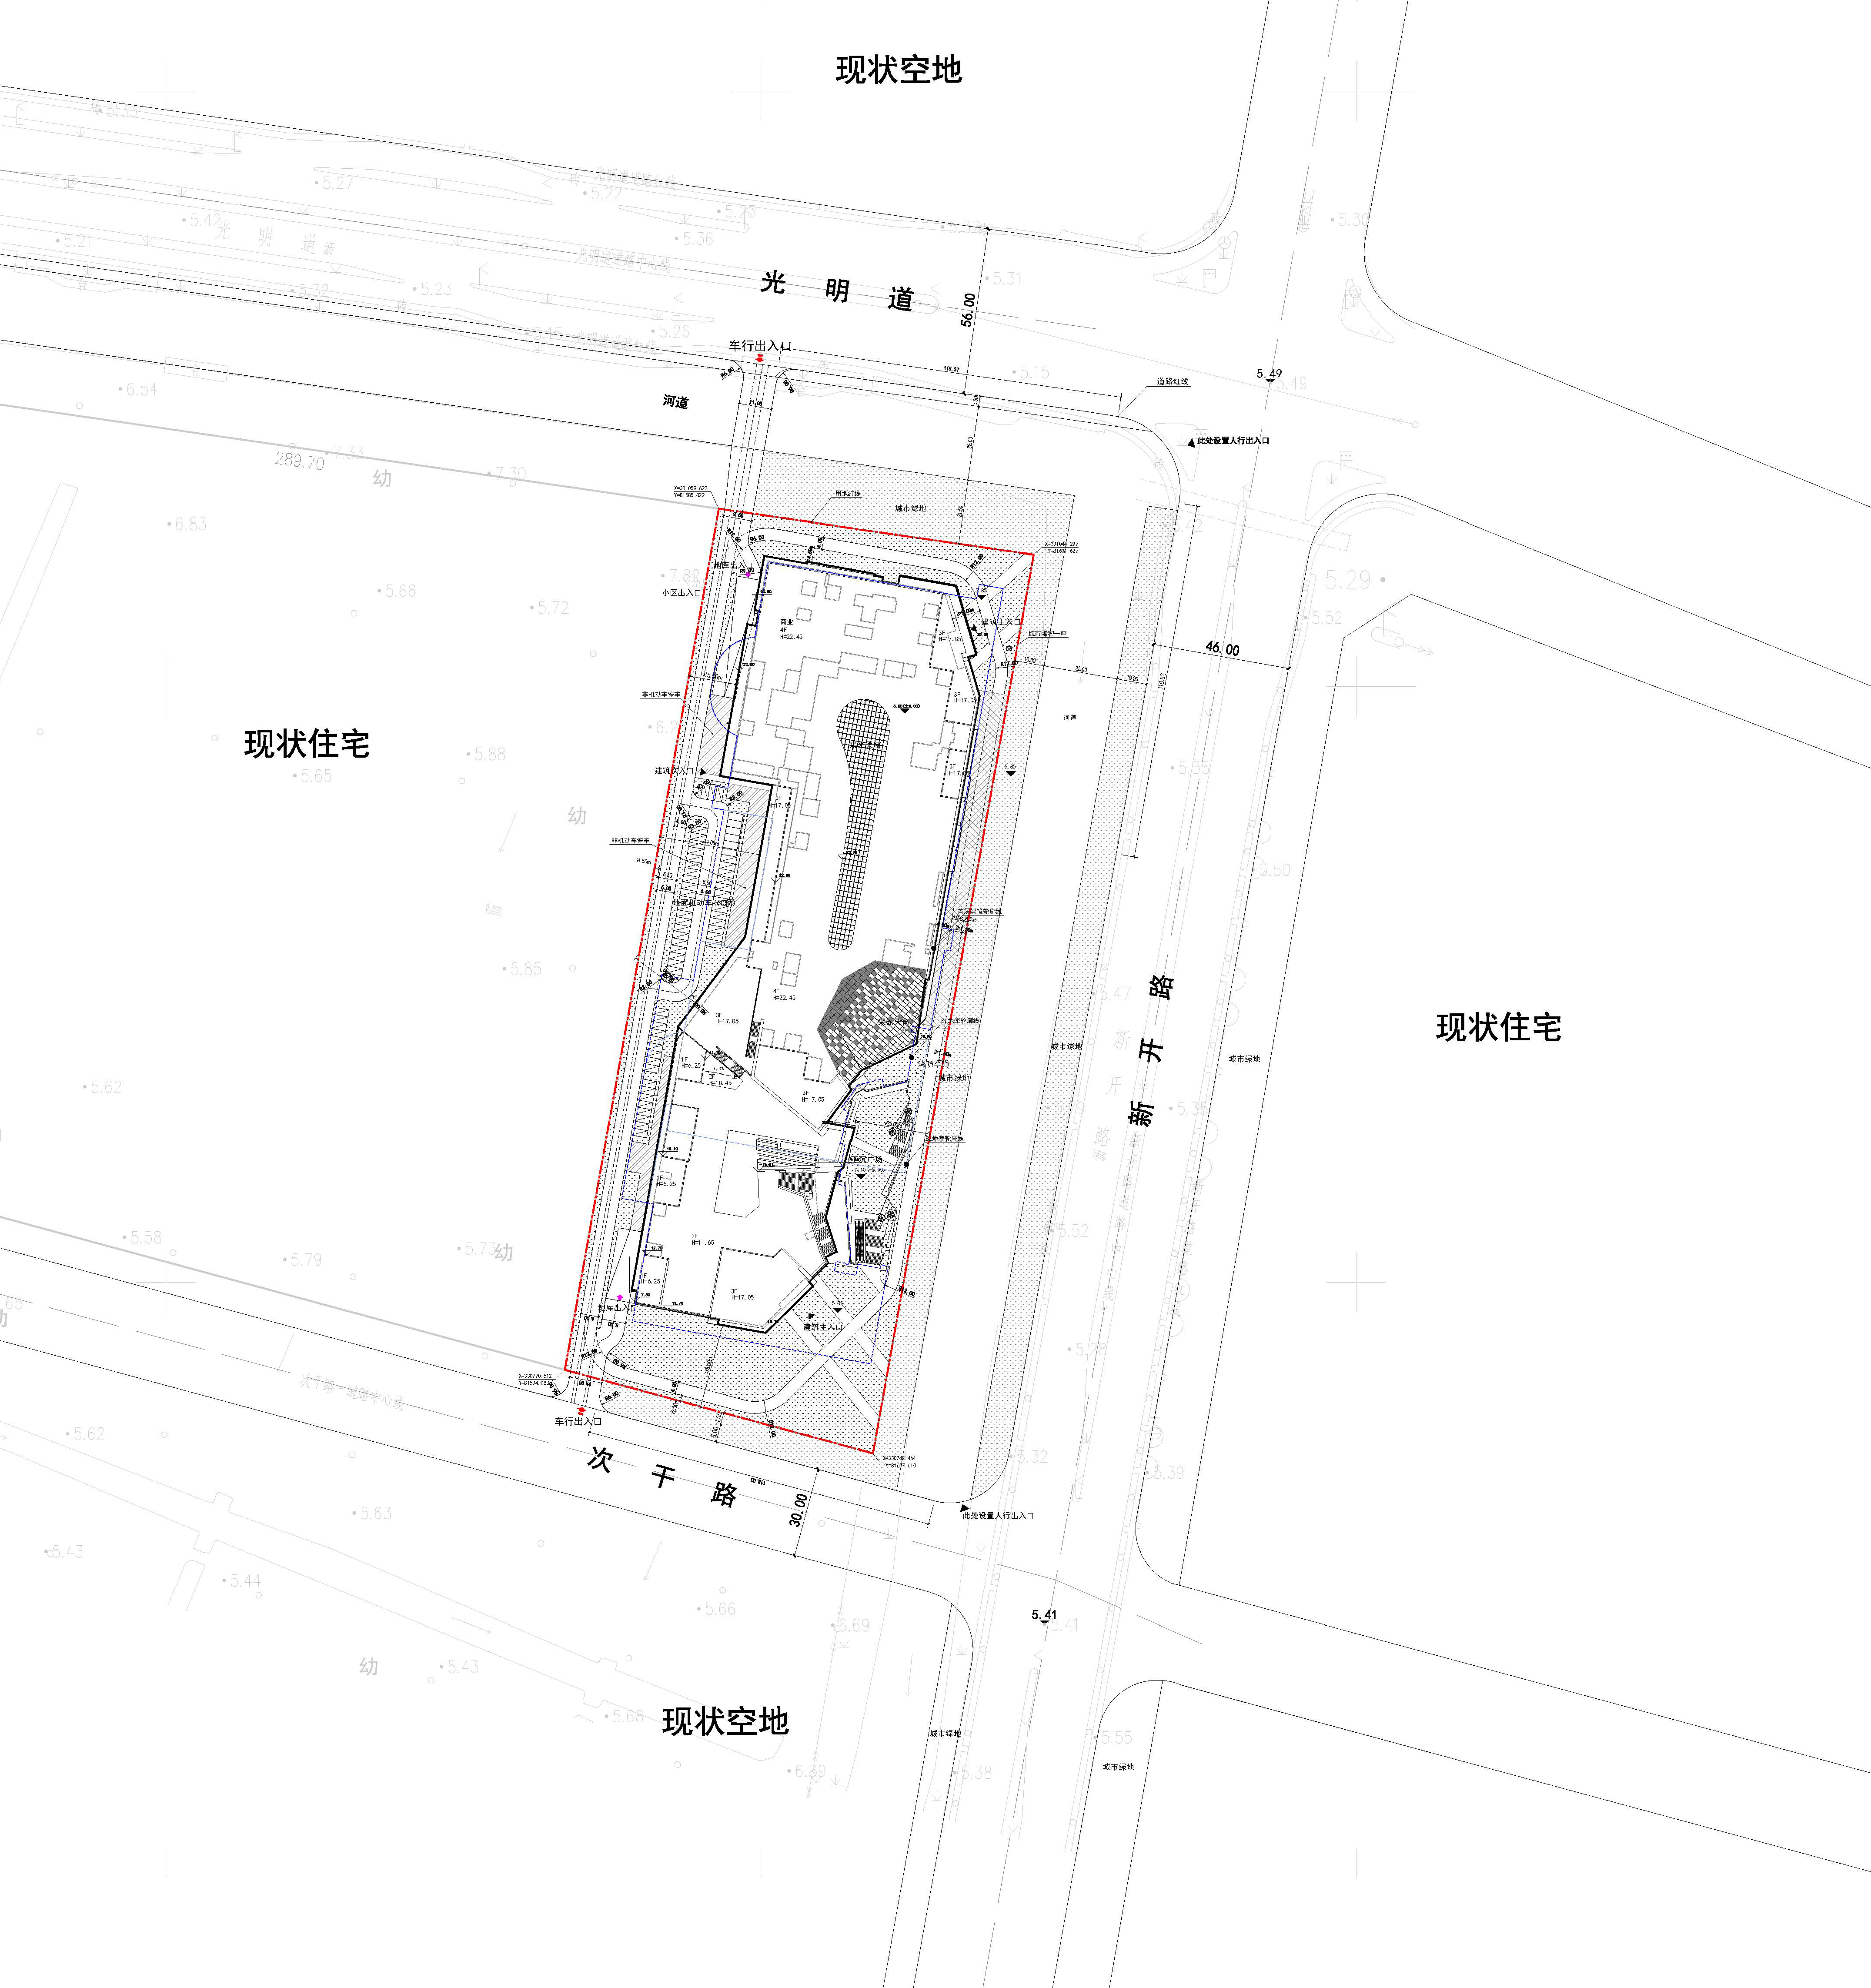 上新！武清区雍盛广场商业项目规划公示_中国网地产